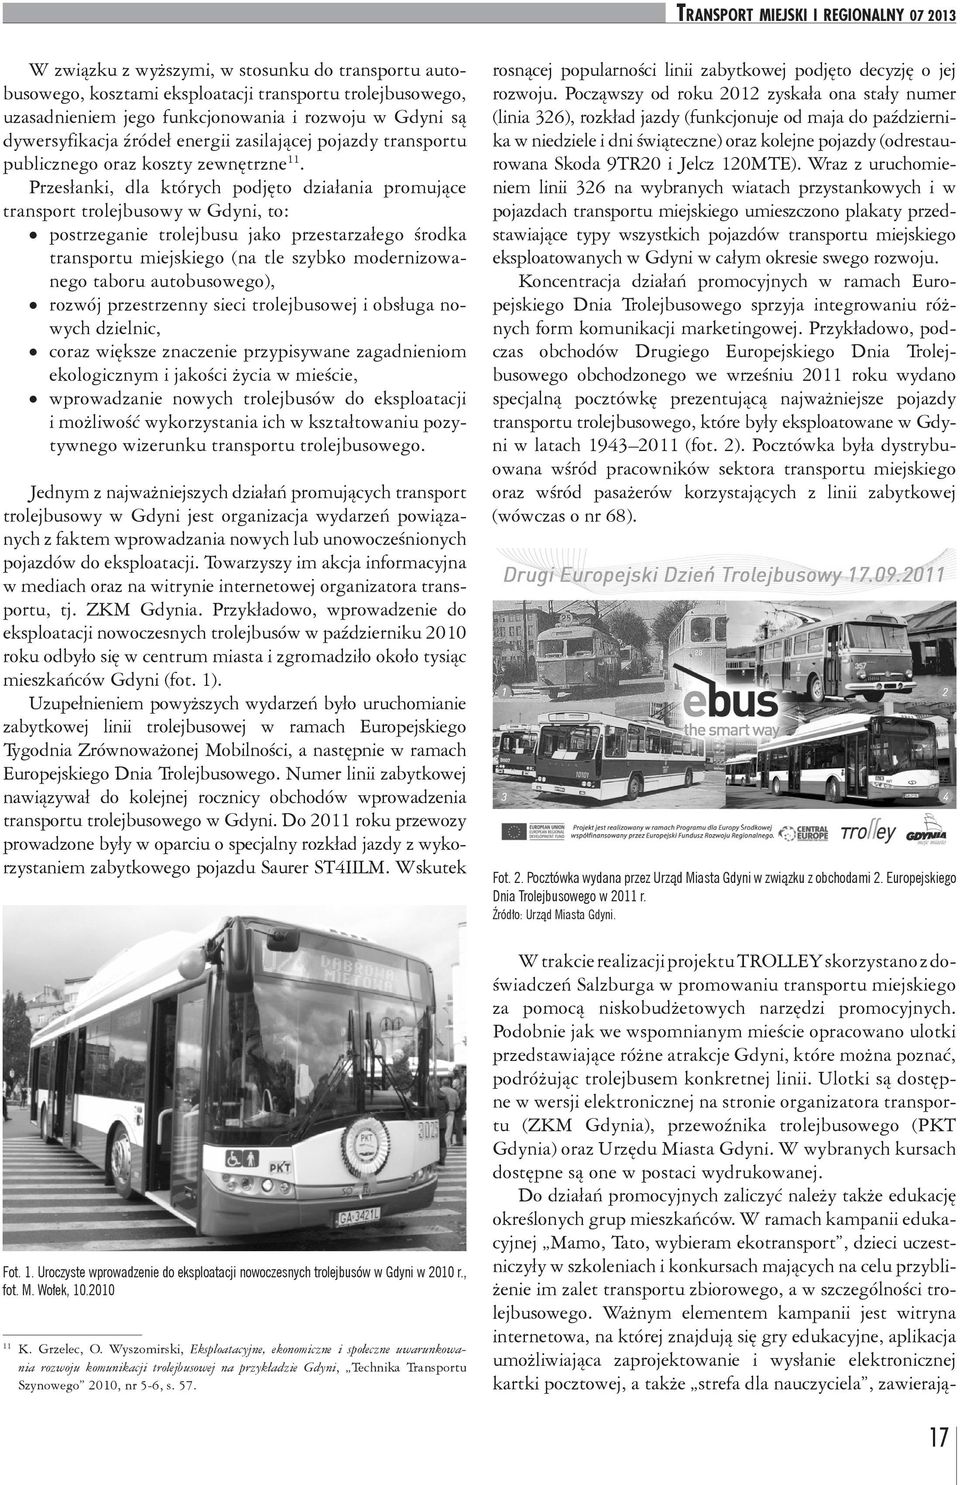 Przesłanki, dla których podjęto działania promujące transport trolejbusowy w Gdyni, to: postrzeganie trolejbusu jako przestarzałego środka transportu miejskiego (na tle szybko modernizowanego taboru